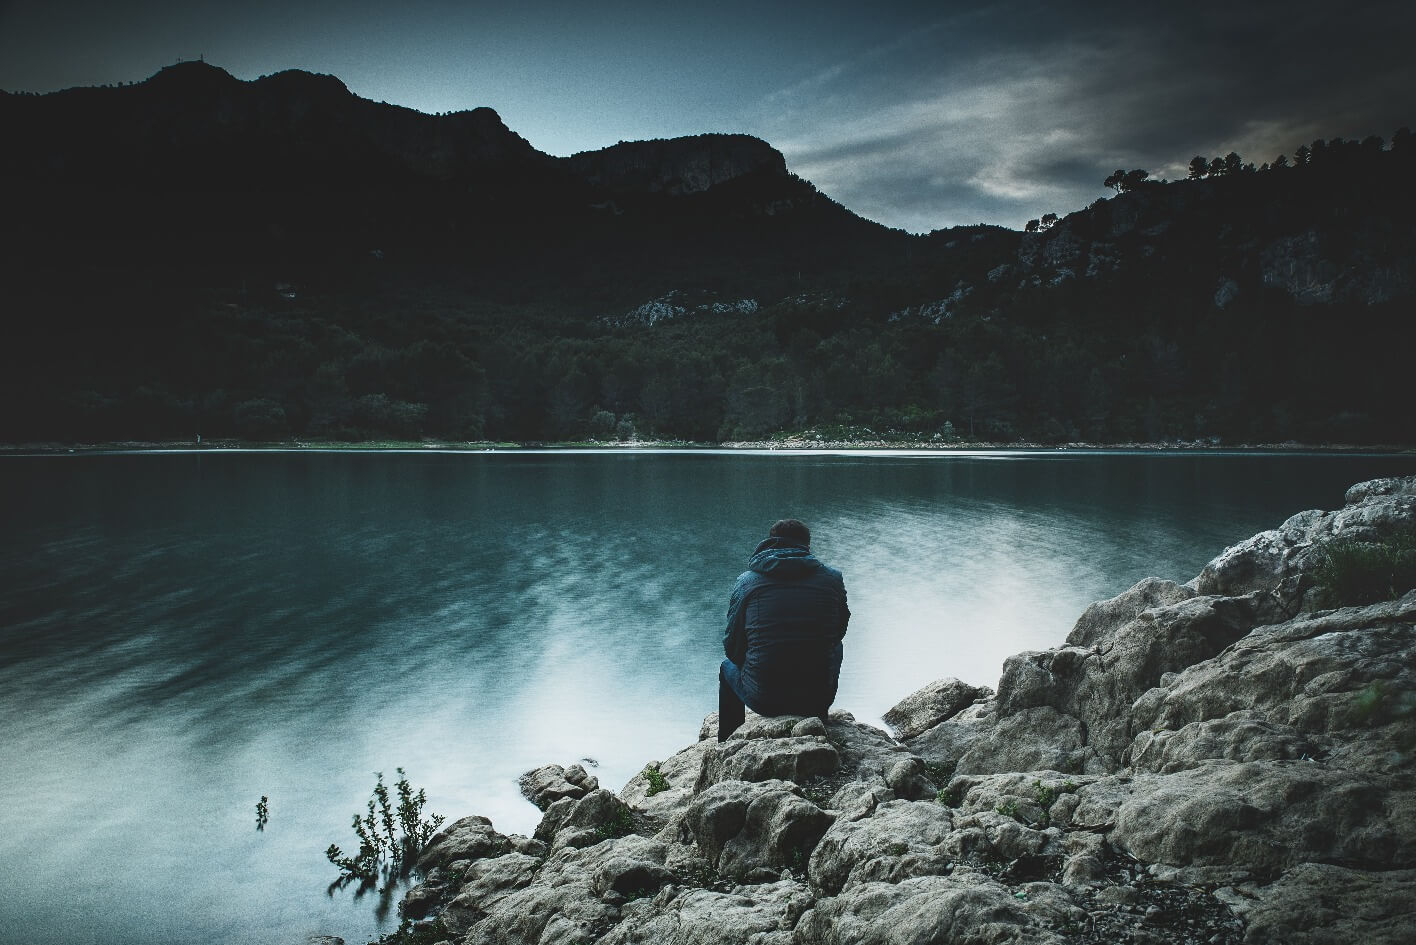 Man sitting in silence near a lake